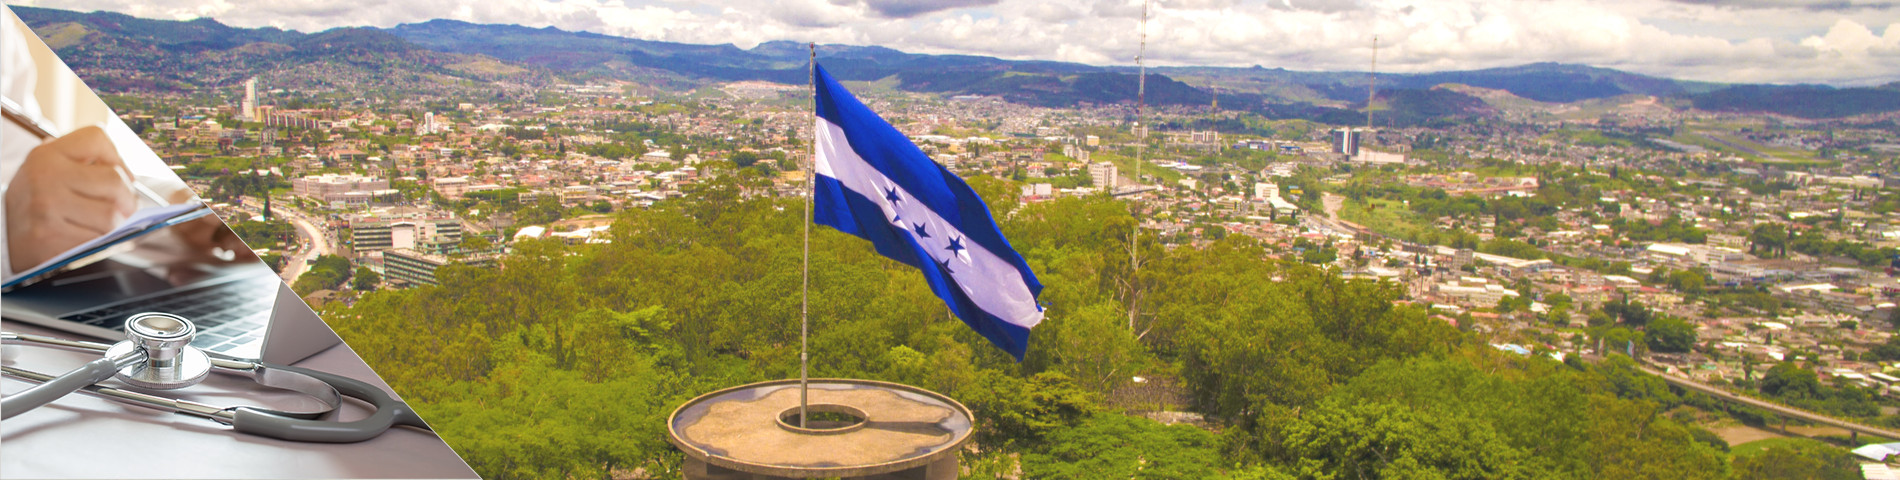 Honduras - Spanska för medicin